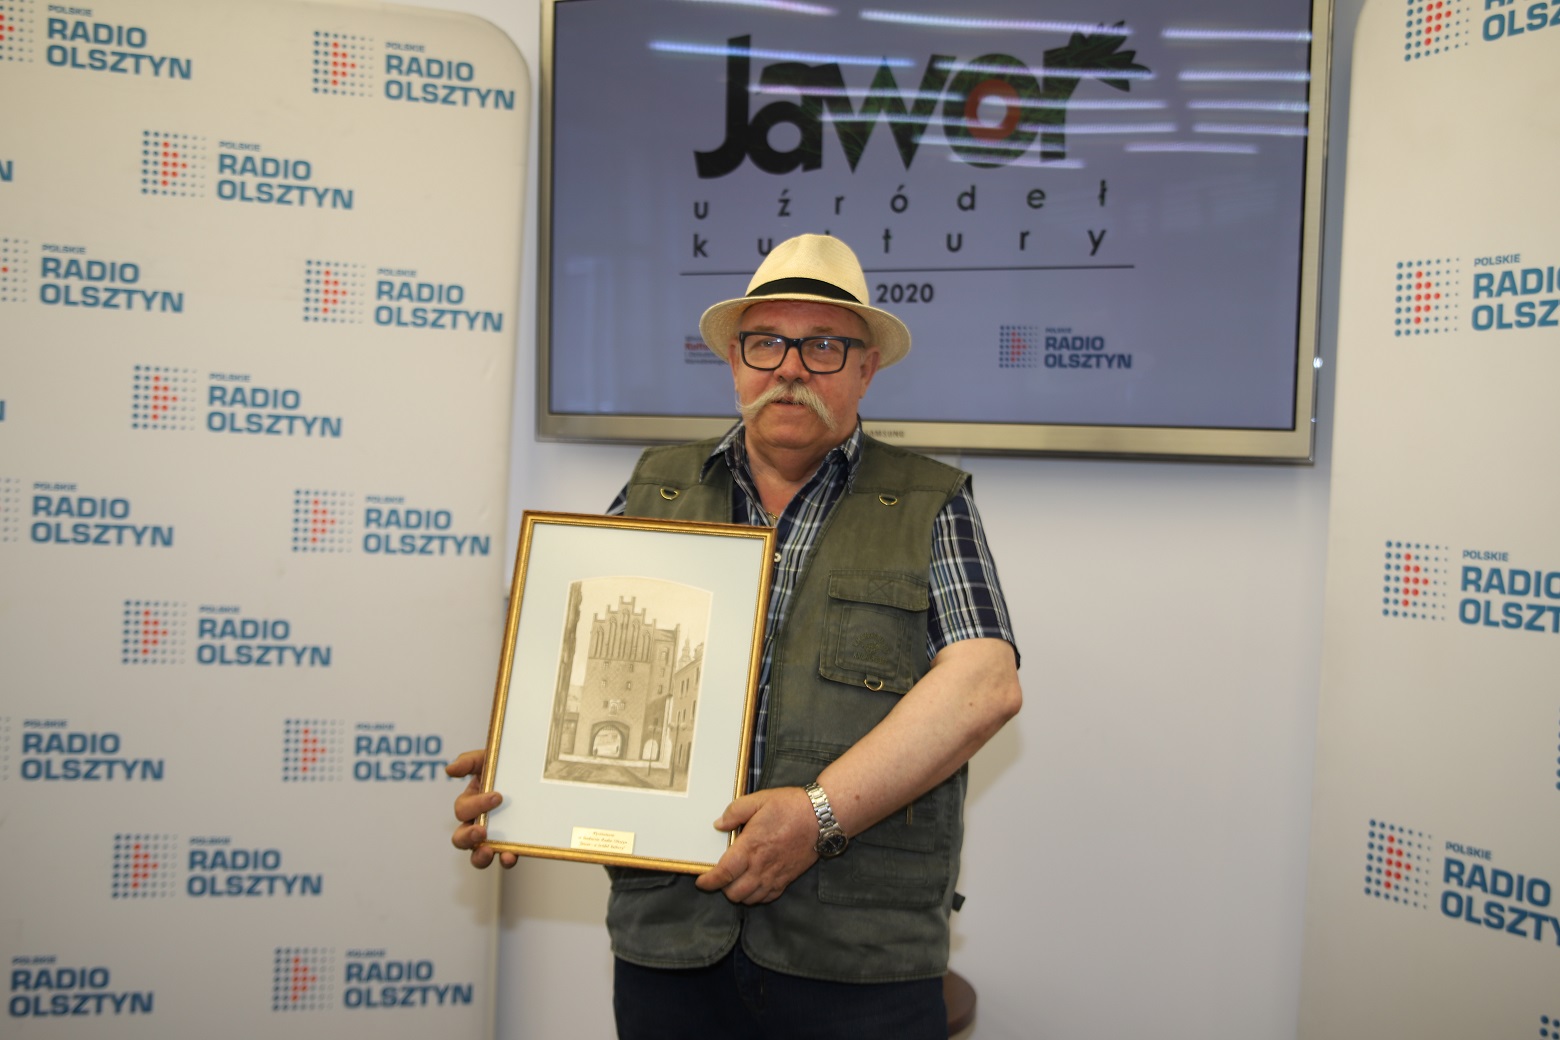 Culture from Elk awarded in Olsztyn